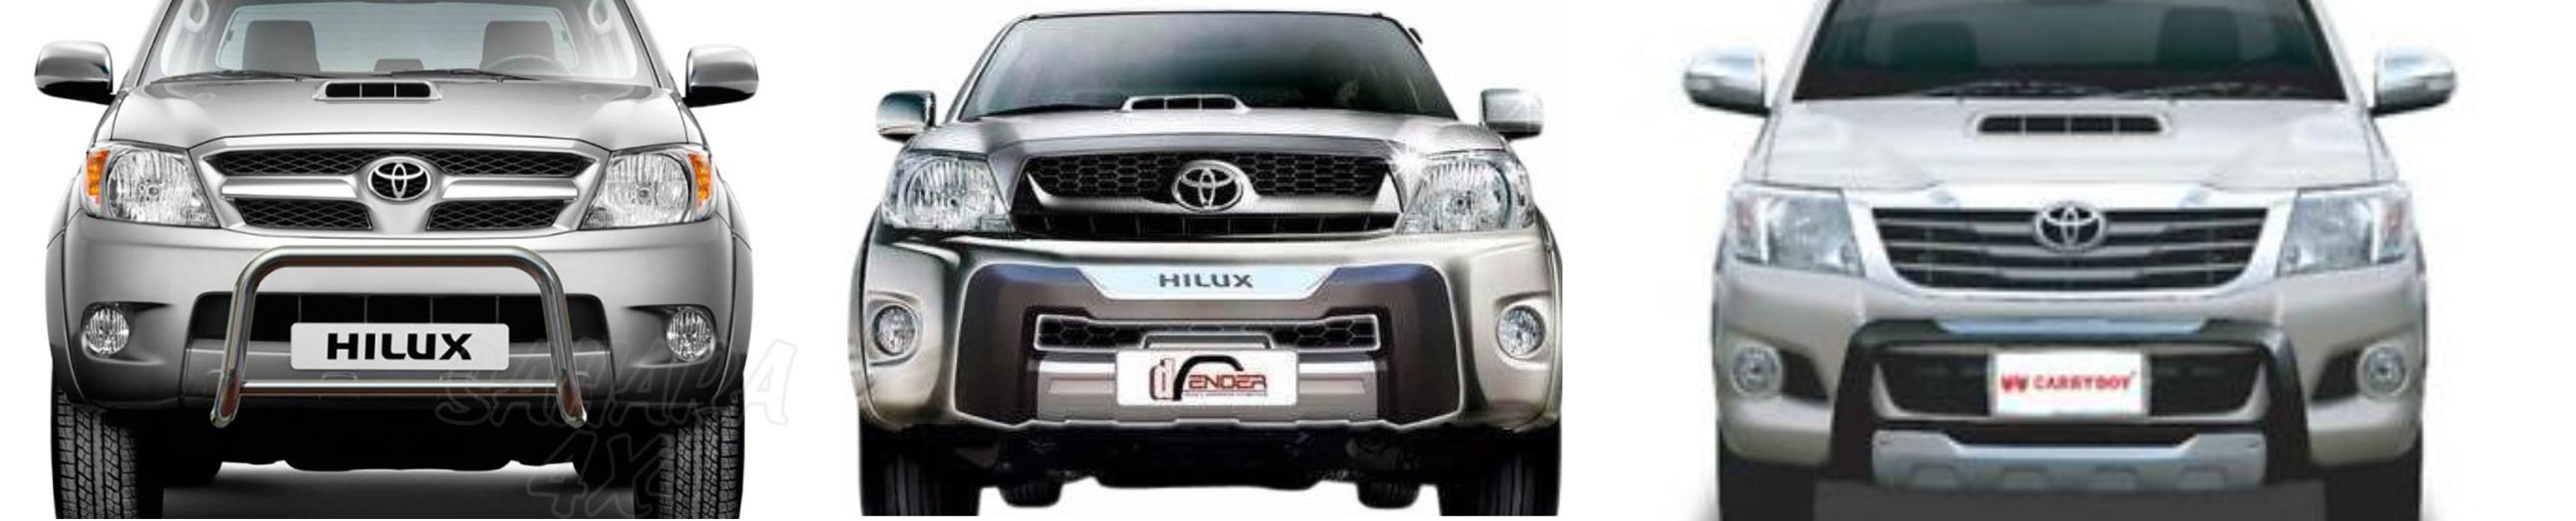 Moja Toyota Hilux Vii Generacji – Czyli Pick-Upem Przez Świat